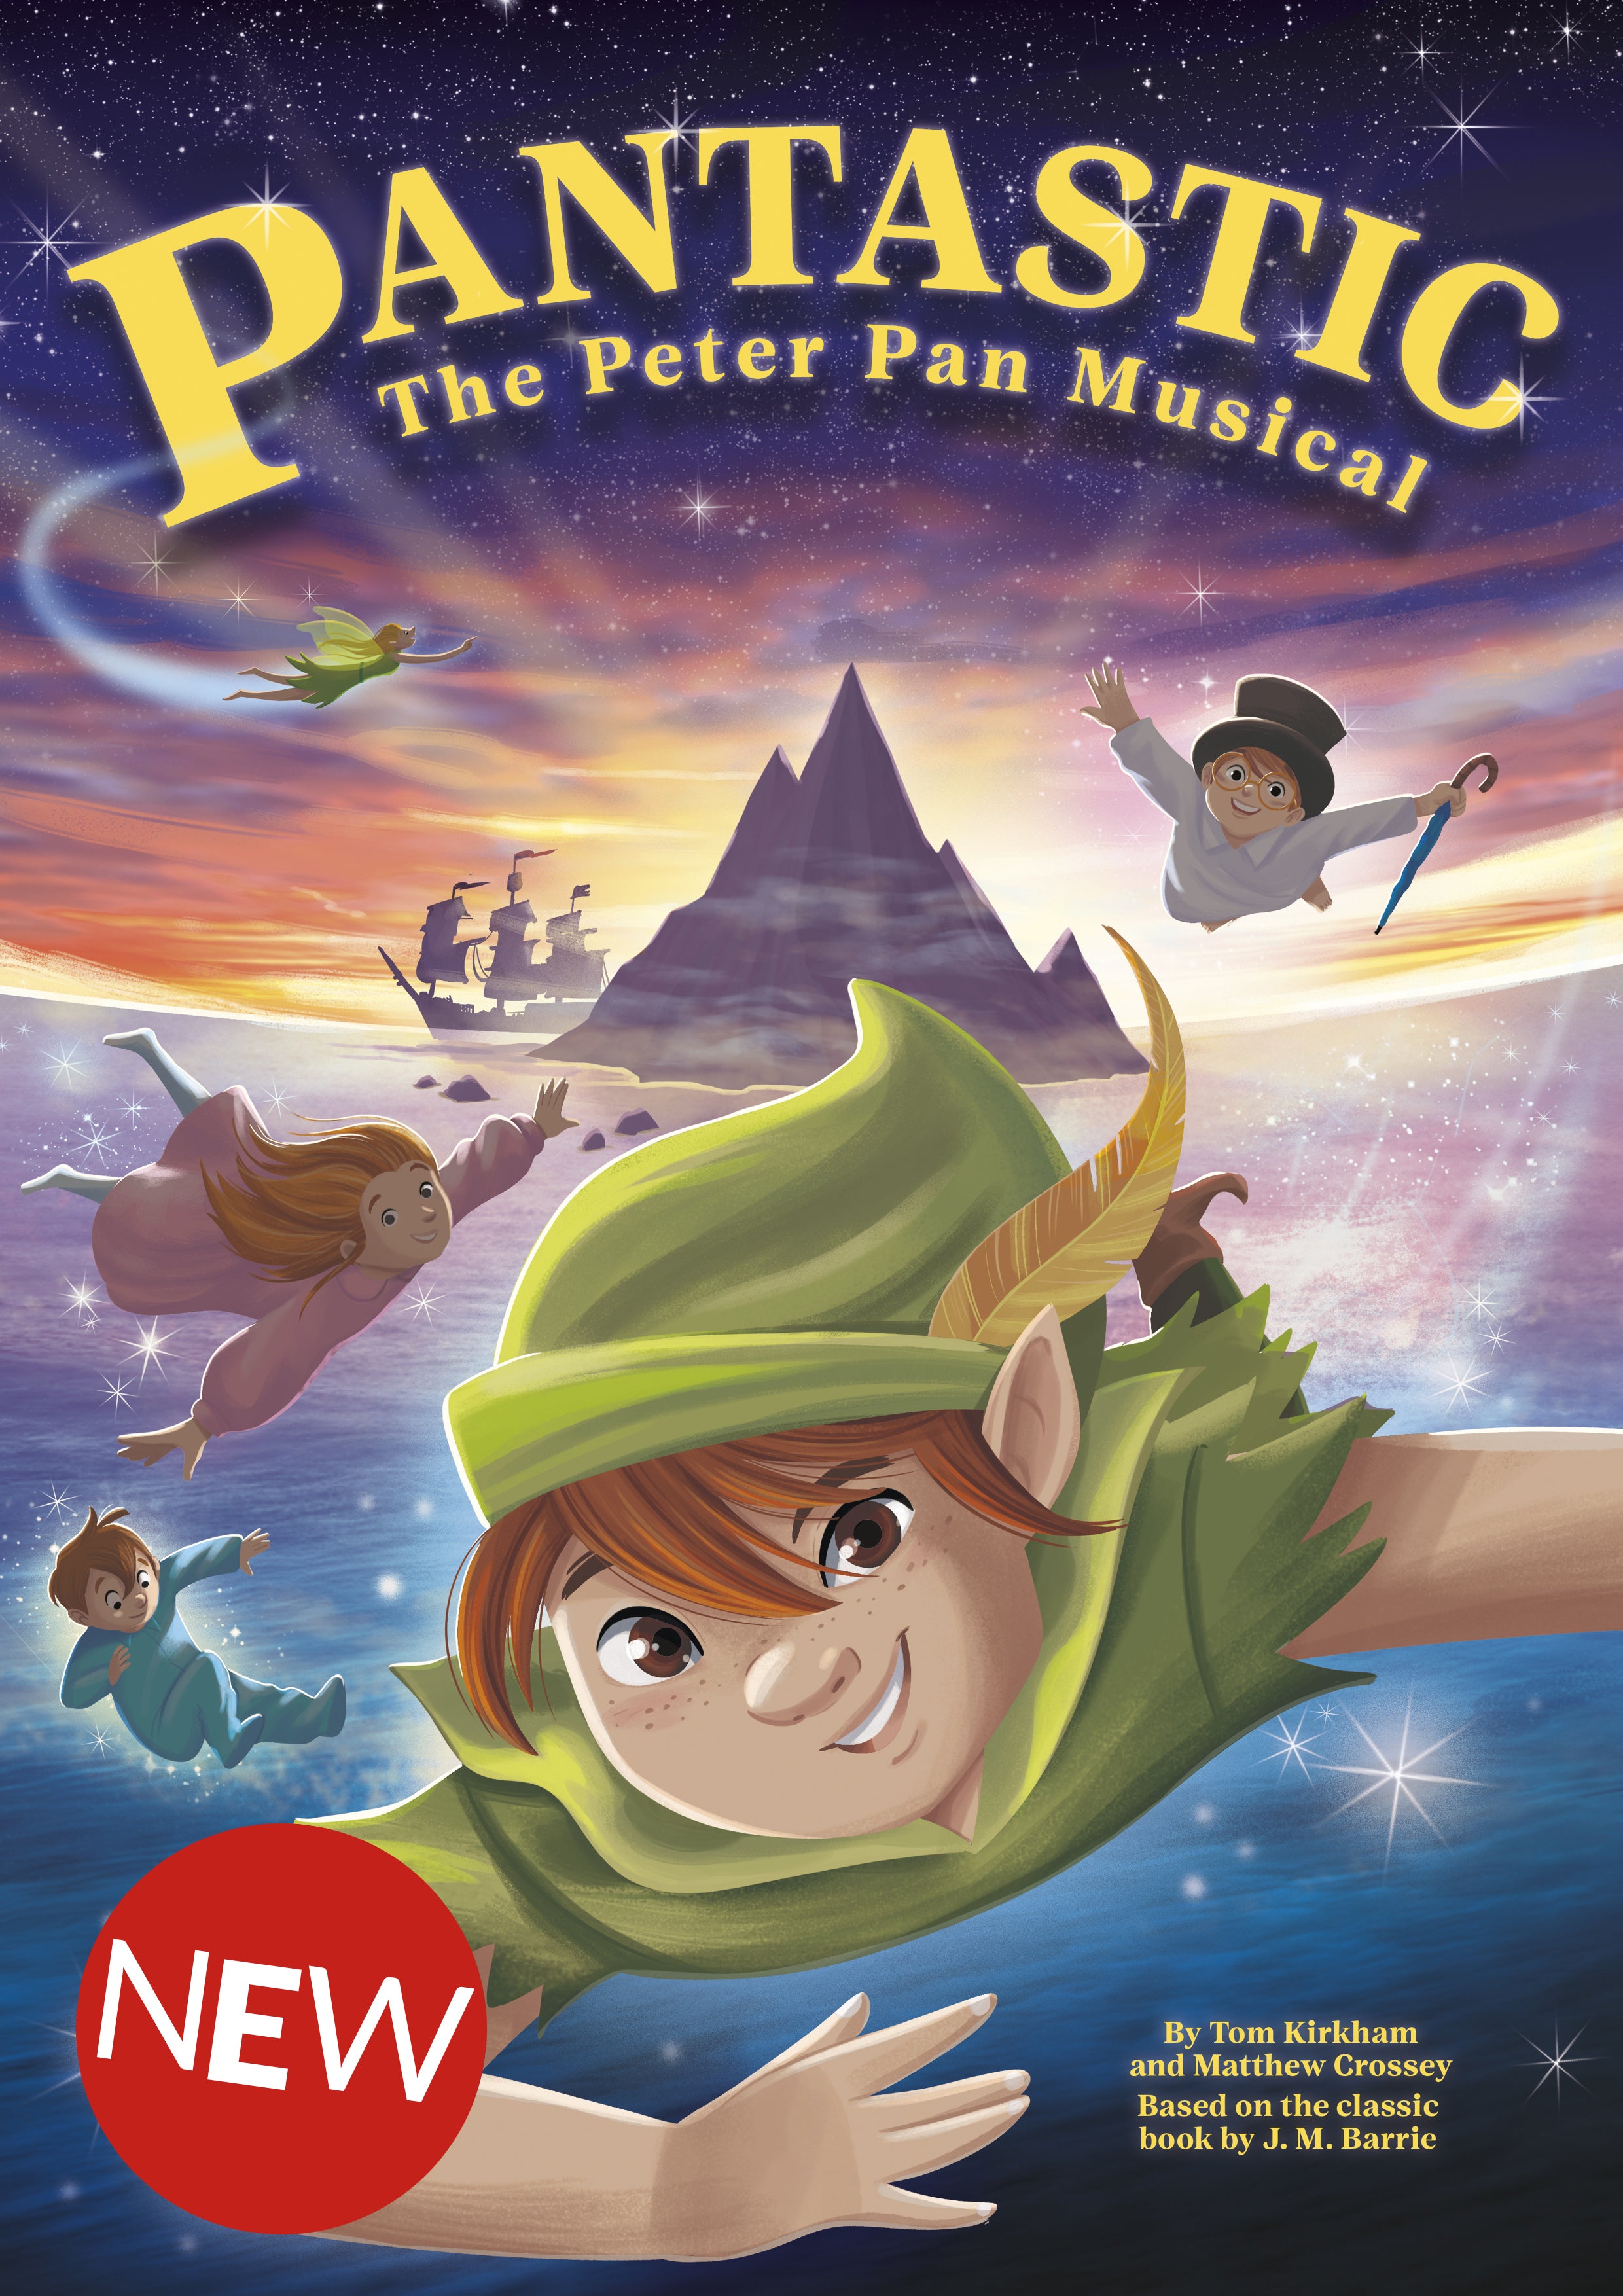 Pantastic - The Peter Pan Musical